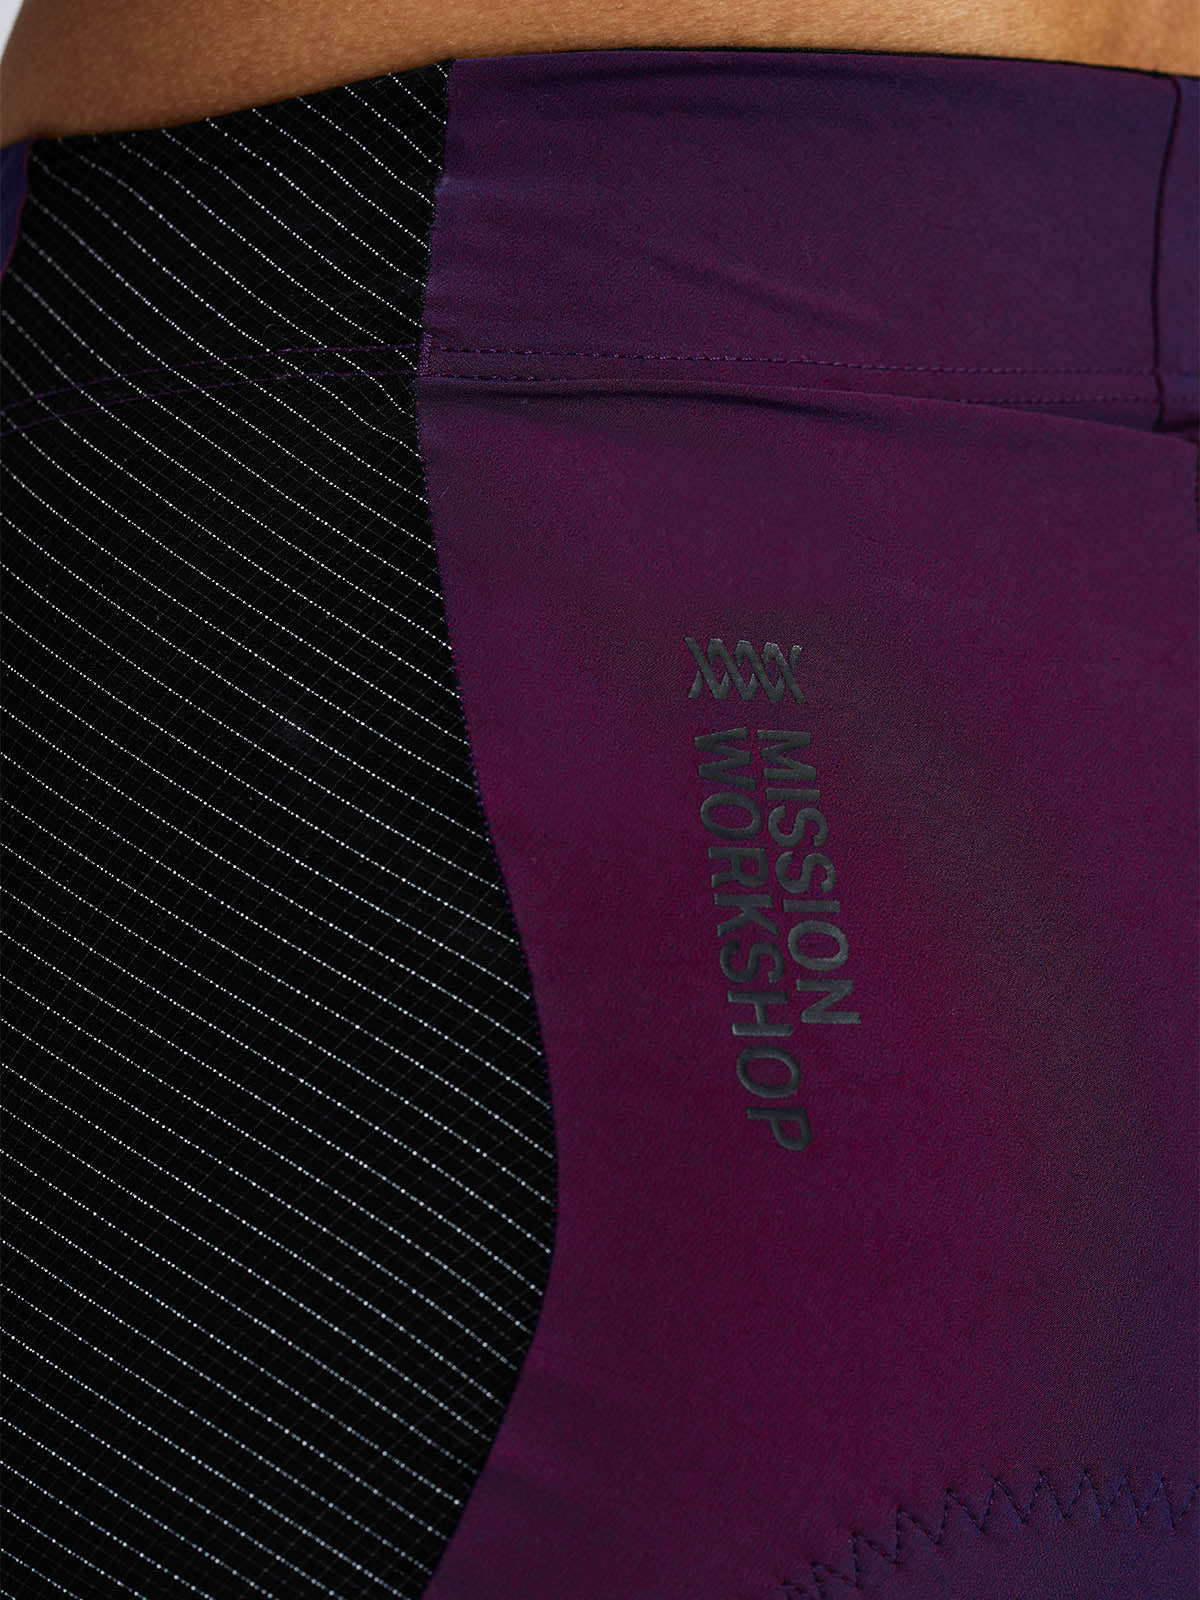 Mission Pro Short Women's von Mission Workshop - Wetterfeste Taschen und technische Bekleidung - San Francisco & Los Angeles - Für die Ewigkeit gebaut - Garantiert